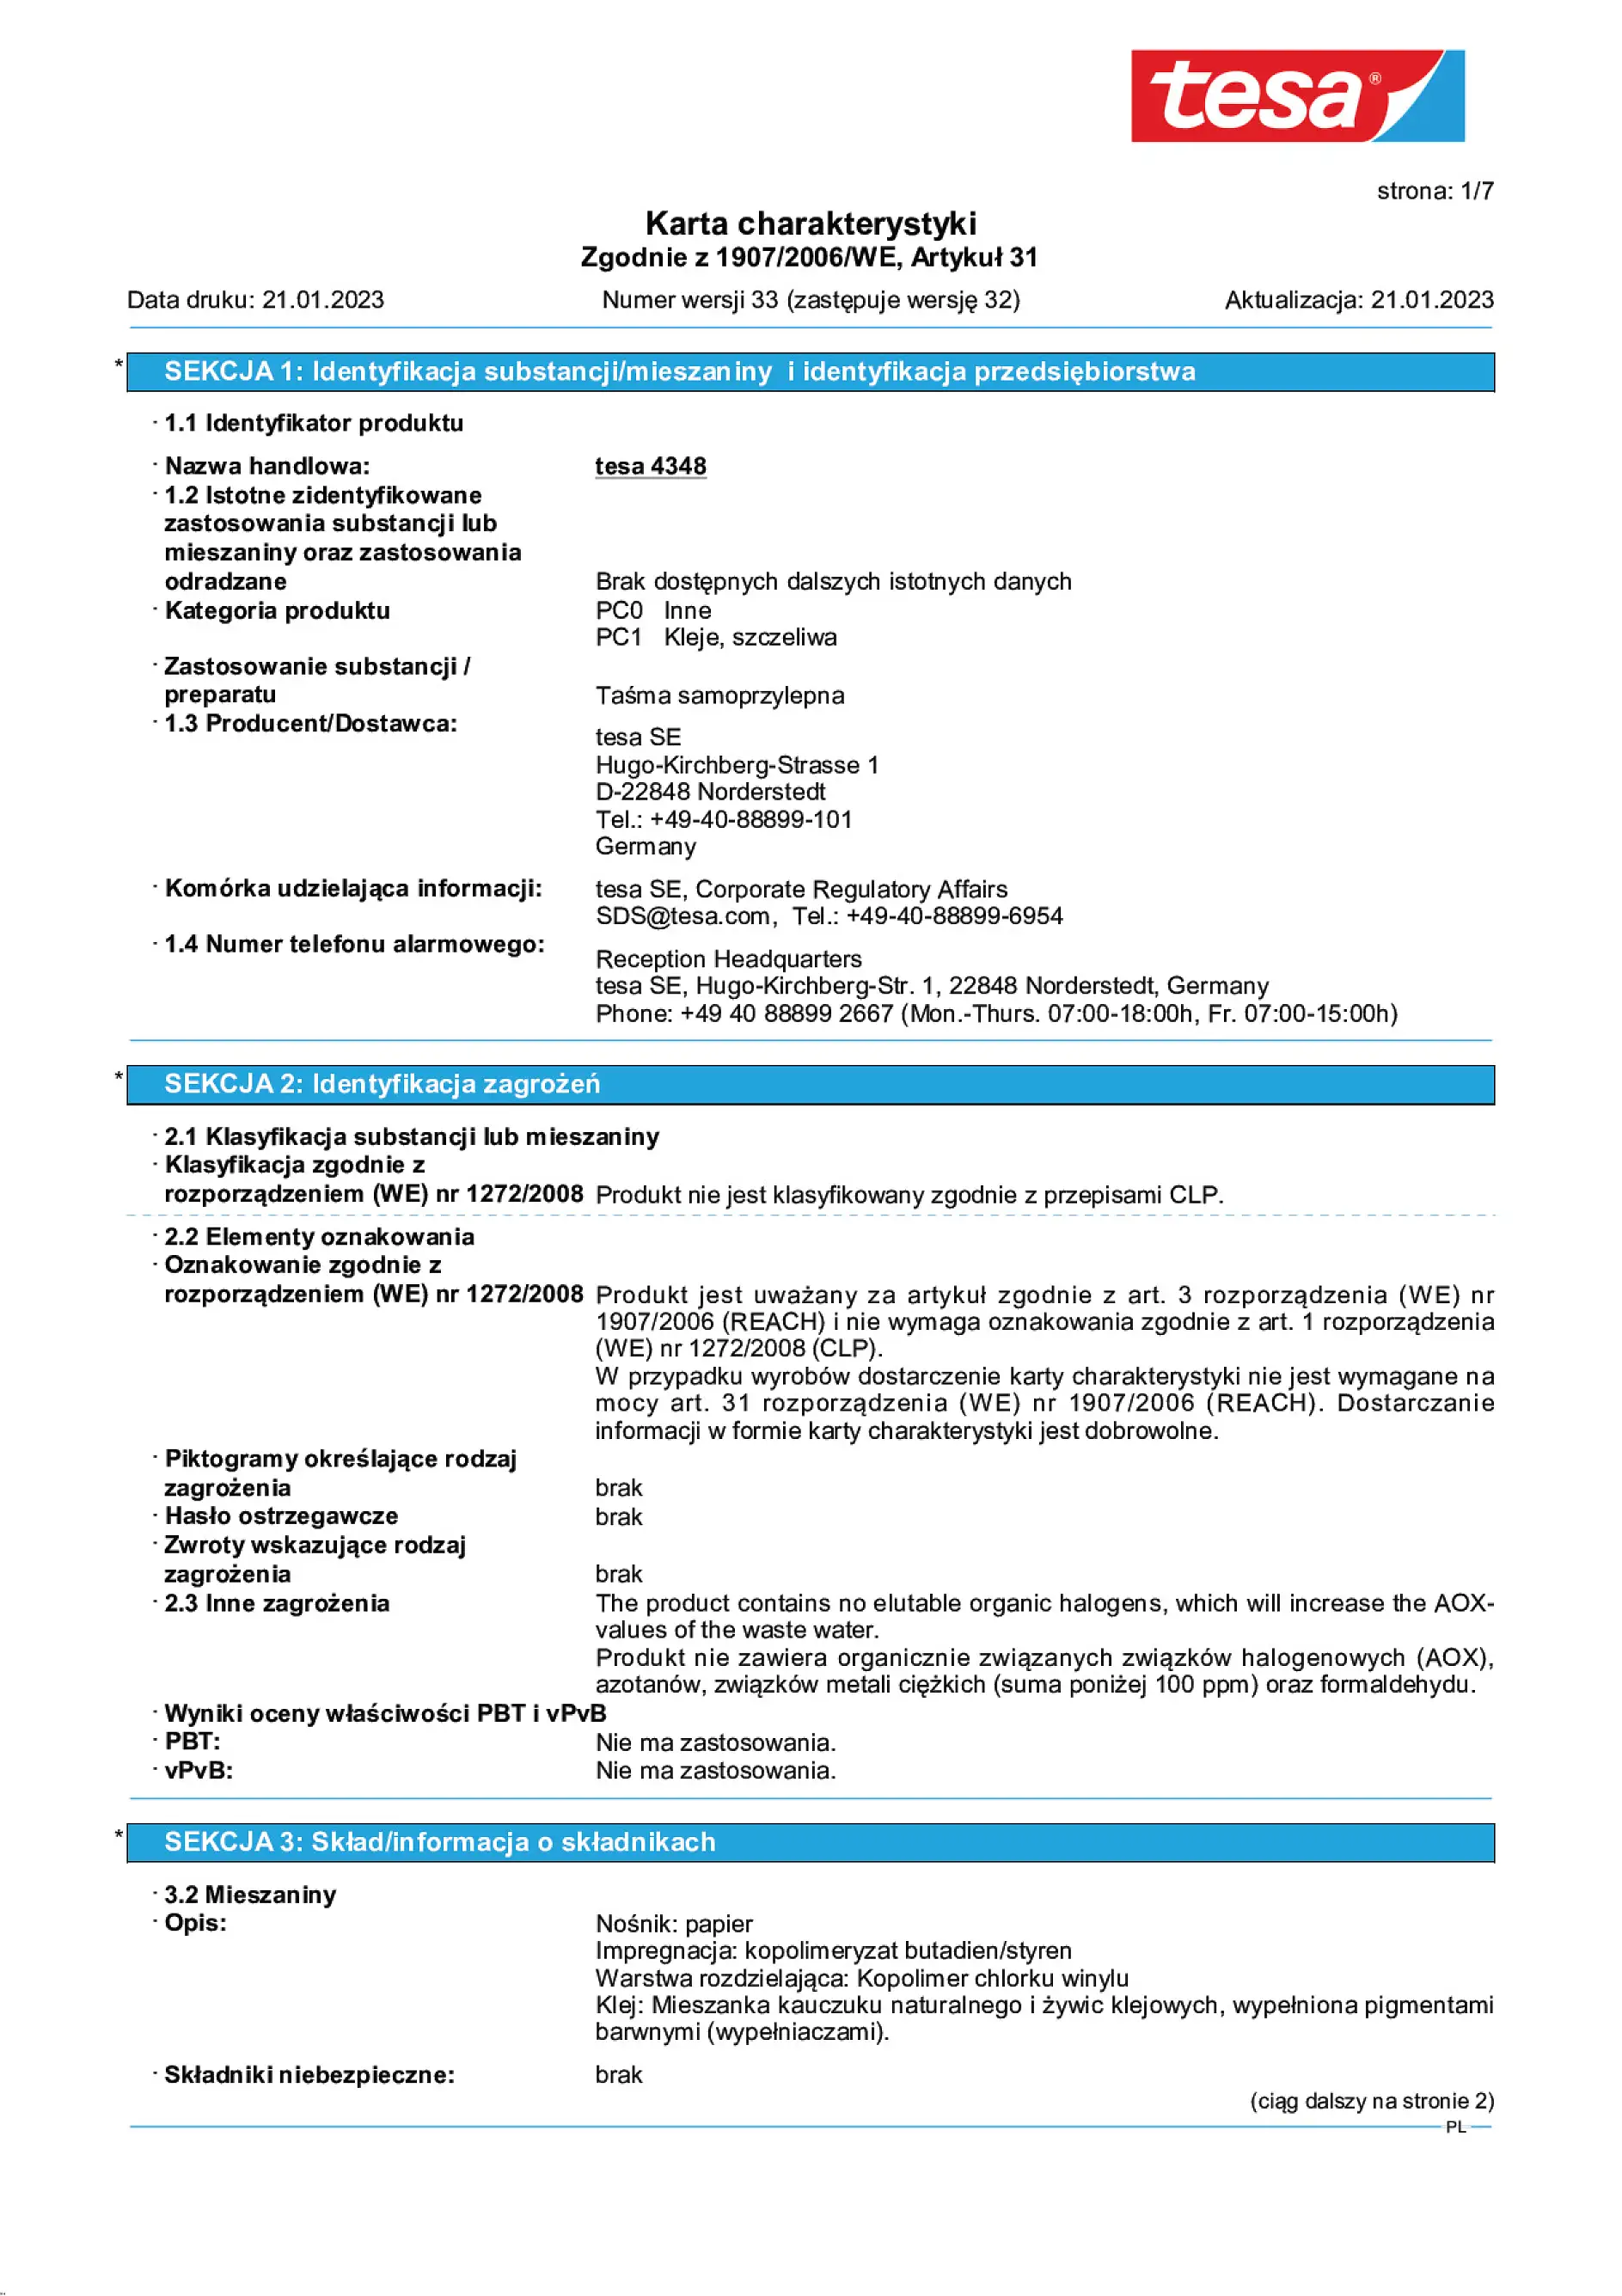 Safety data sheet_tesa® Professional 04348_pl-PL_v33